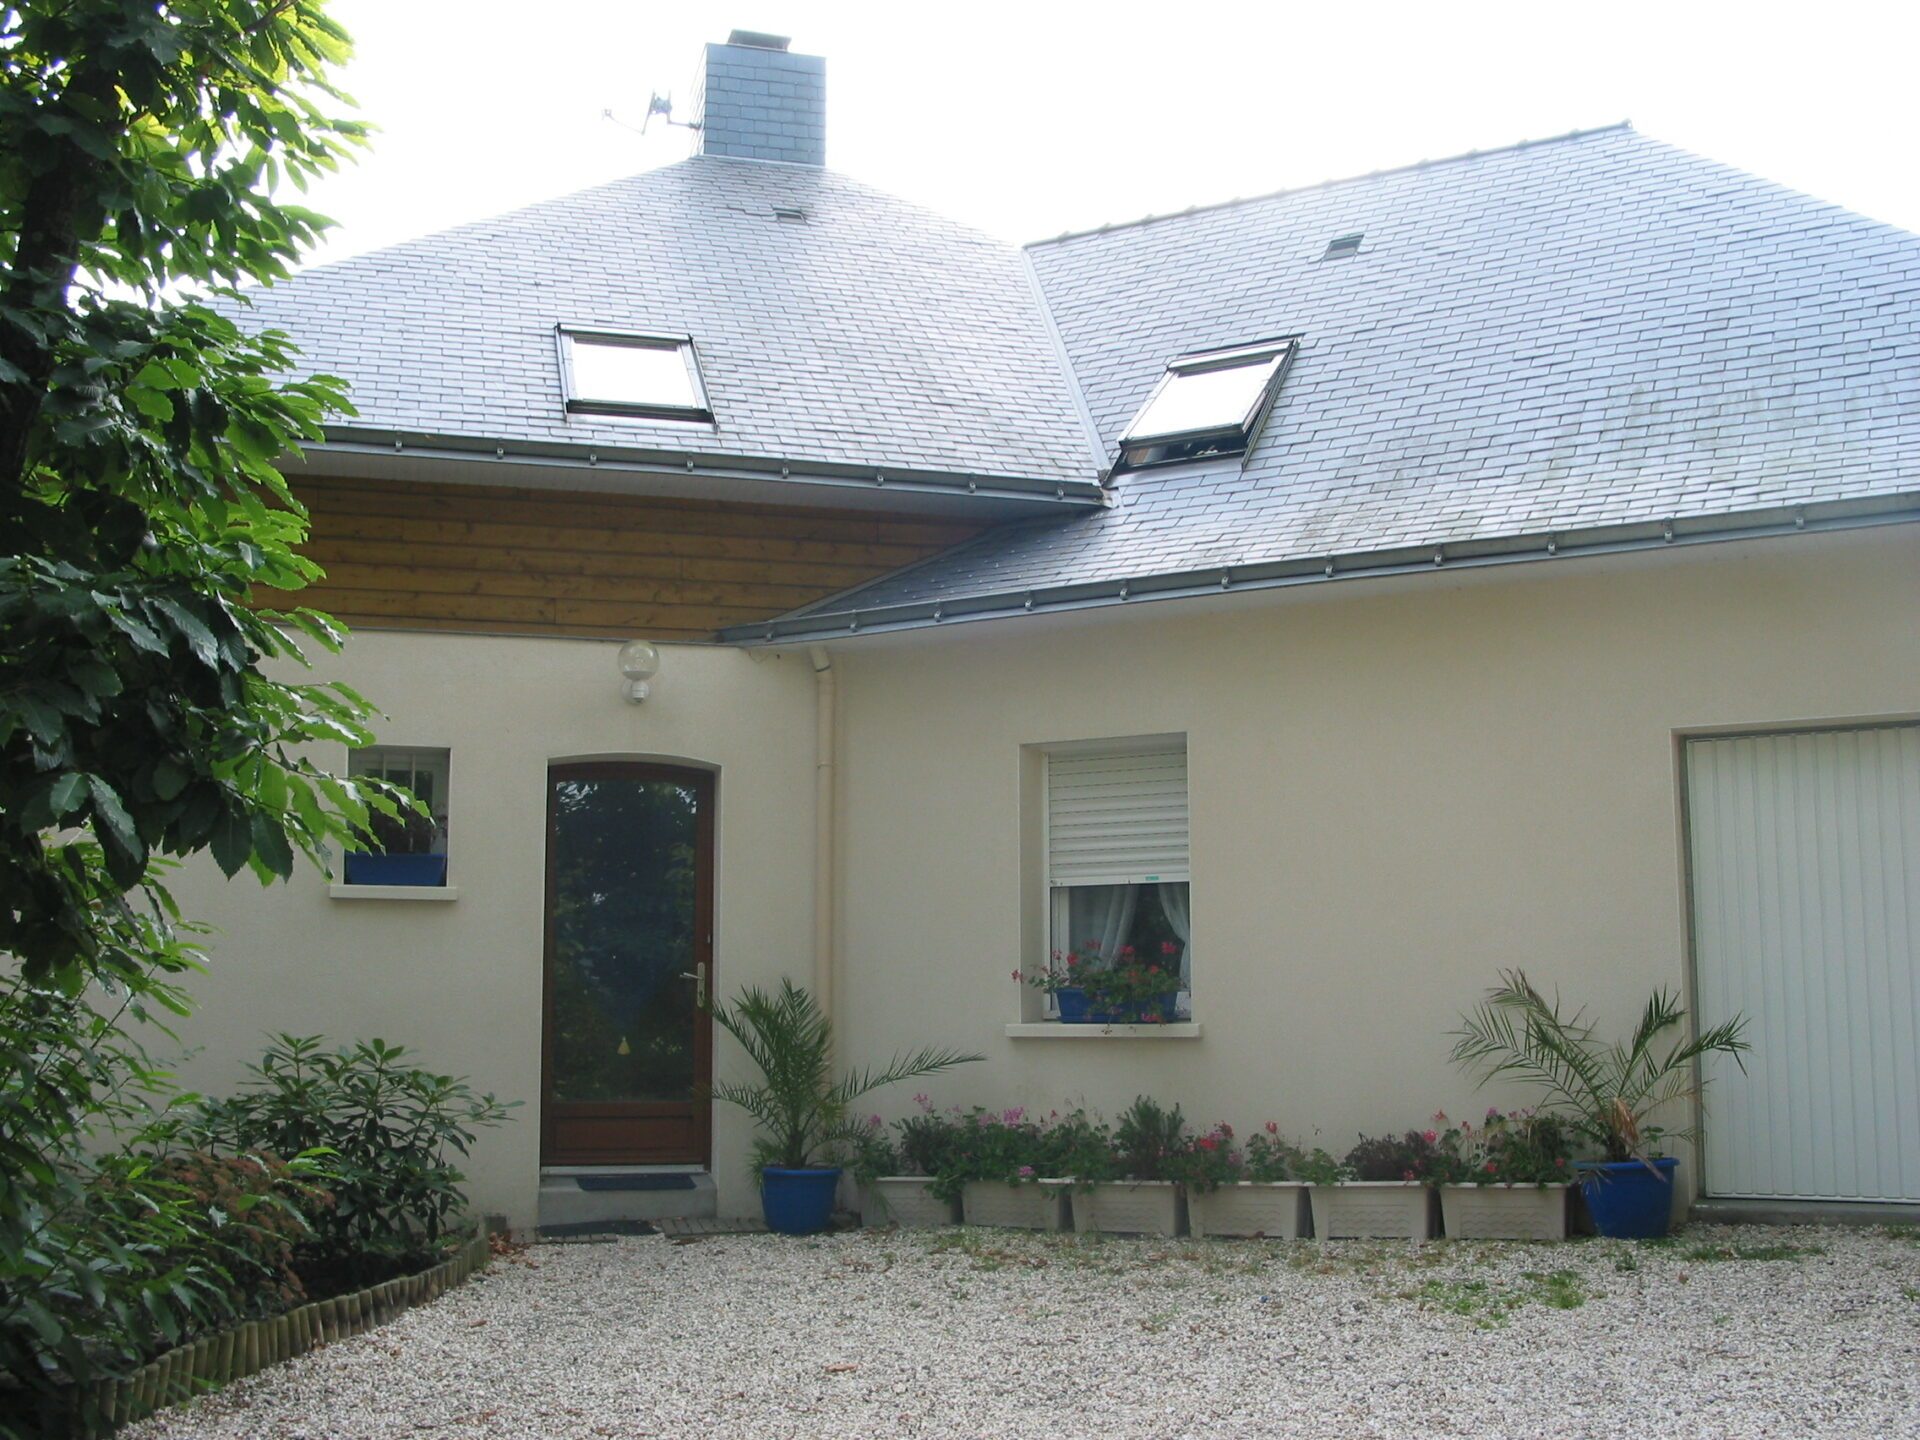 Maison avec bardage bois et grandes baies vitrées ainsi qu'une toiture en ardoise